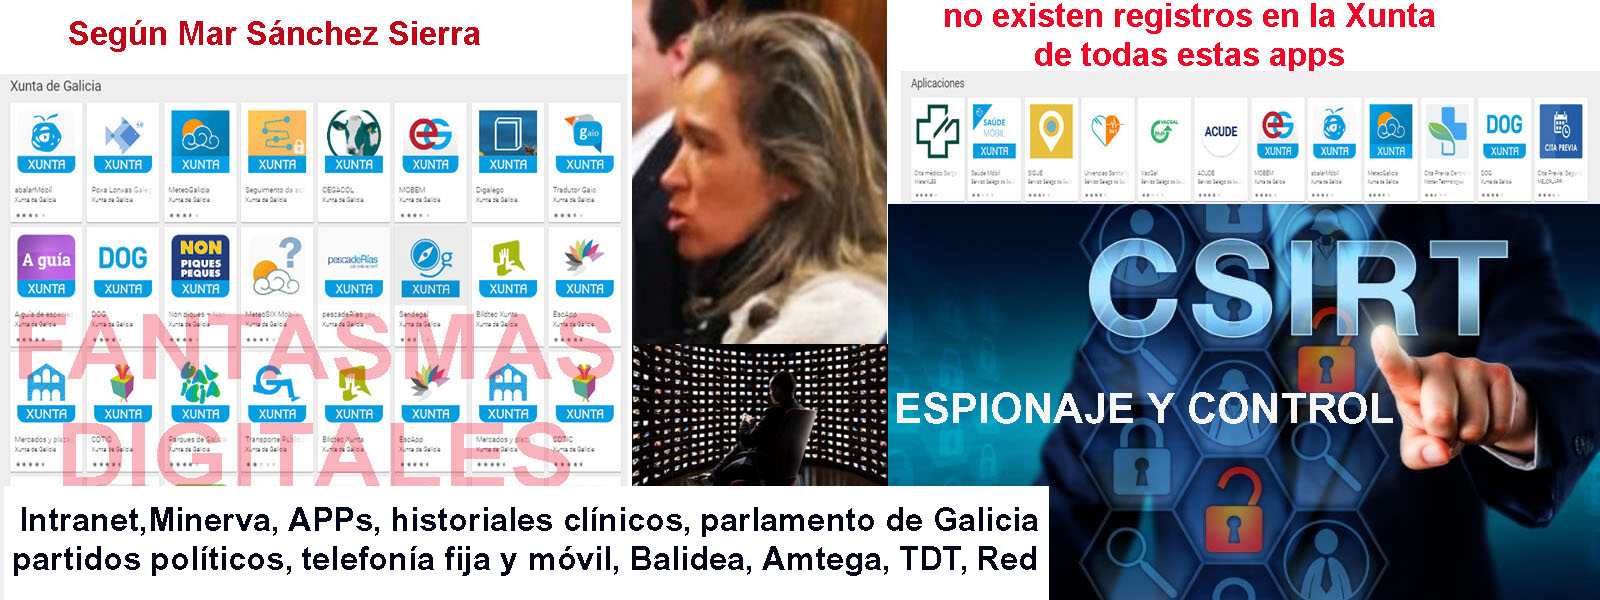 Hemeroteca Xornal Galicia - Feijóo y Mar Sánchez Sierra, montaron una red  de patrullas del ciberespacio y ocultada su partida económica destinada a  espiar todo lo que se mueve en San Caetano